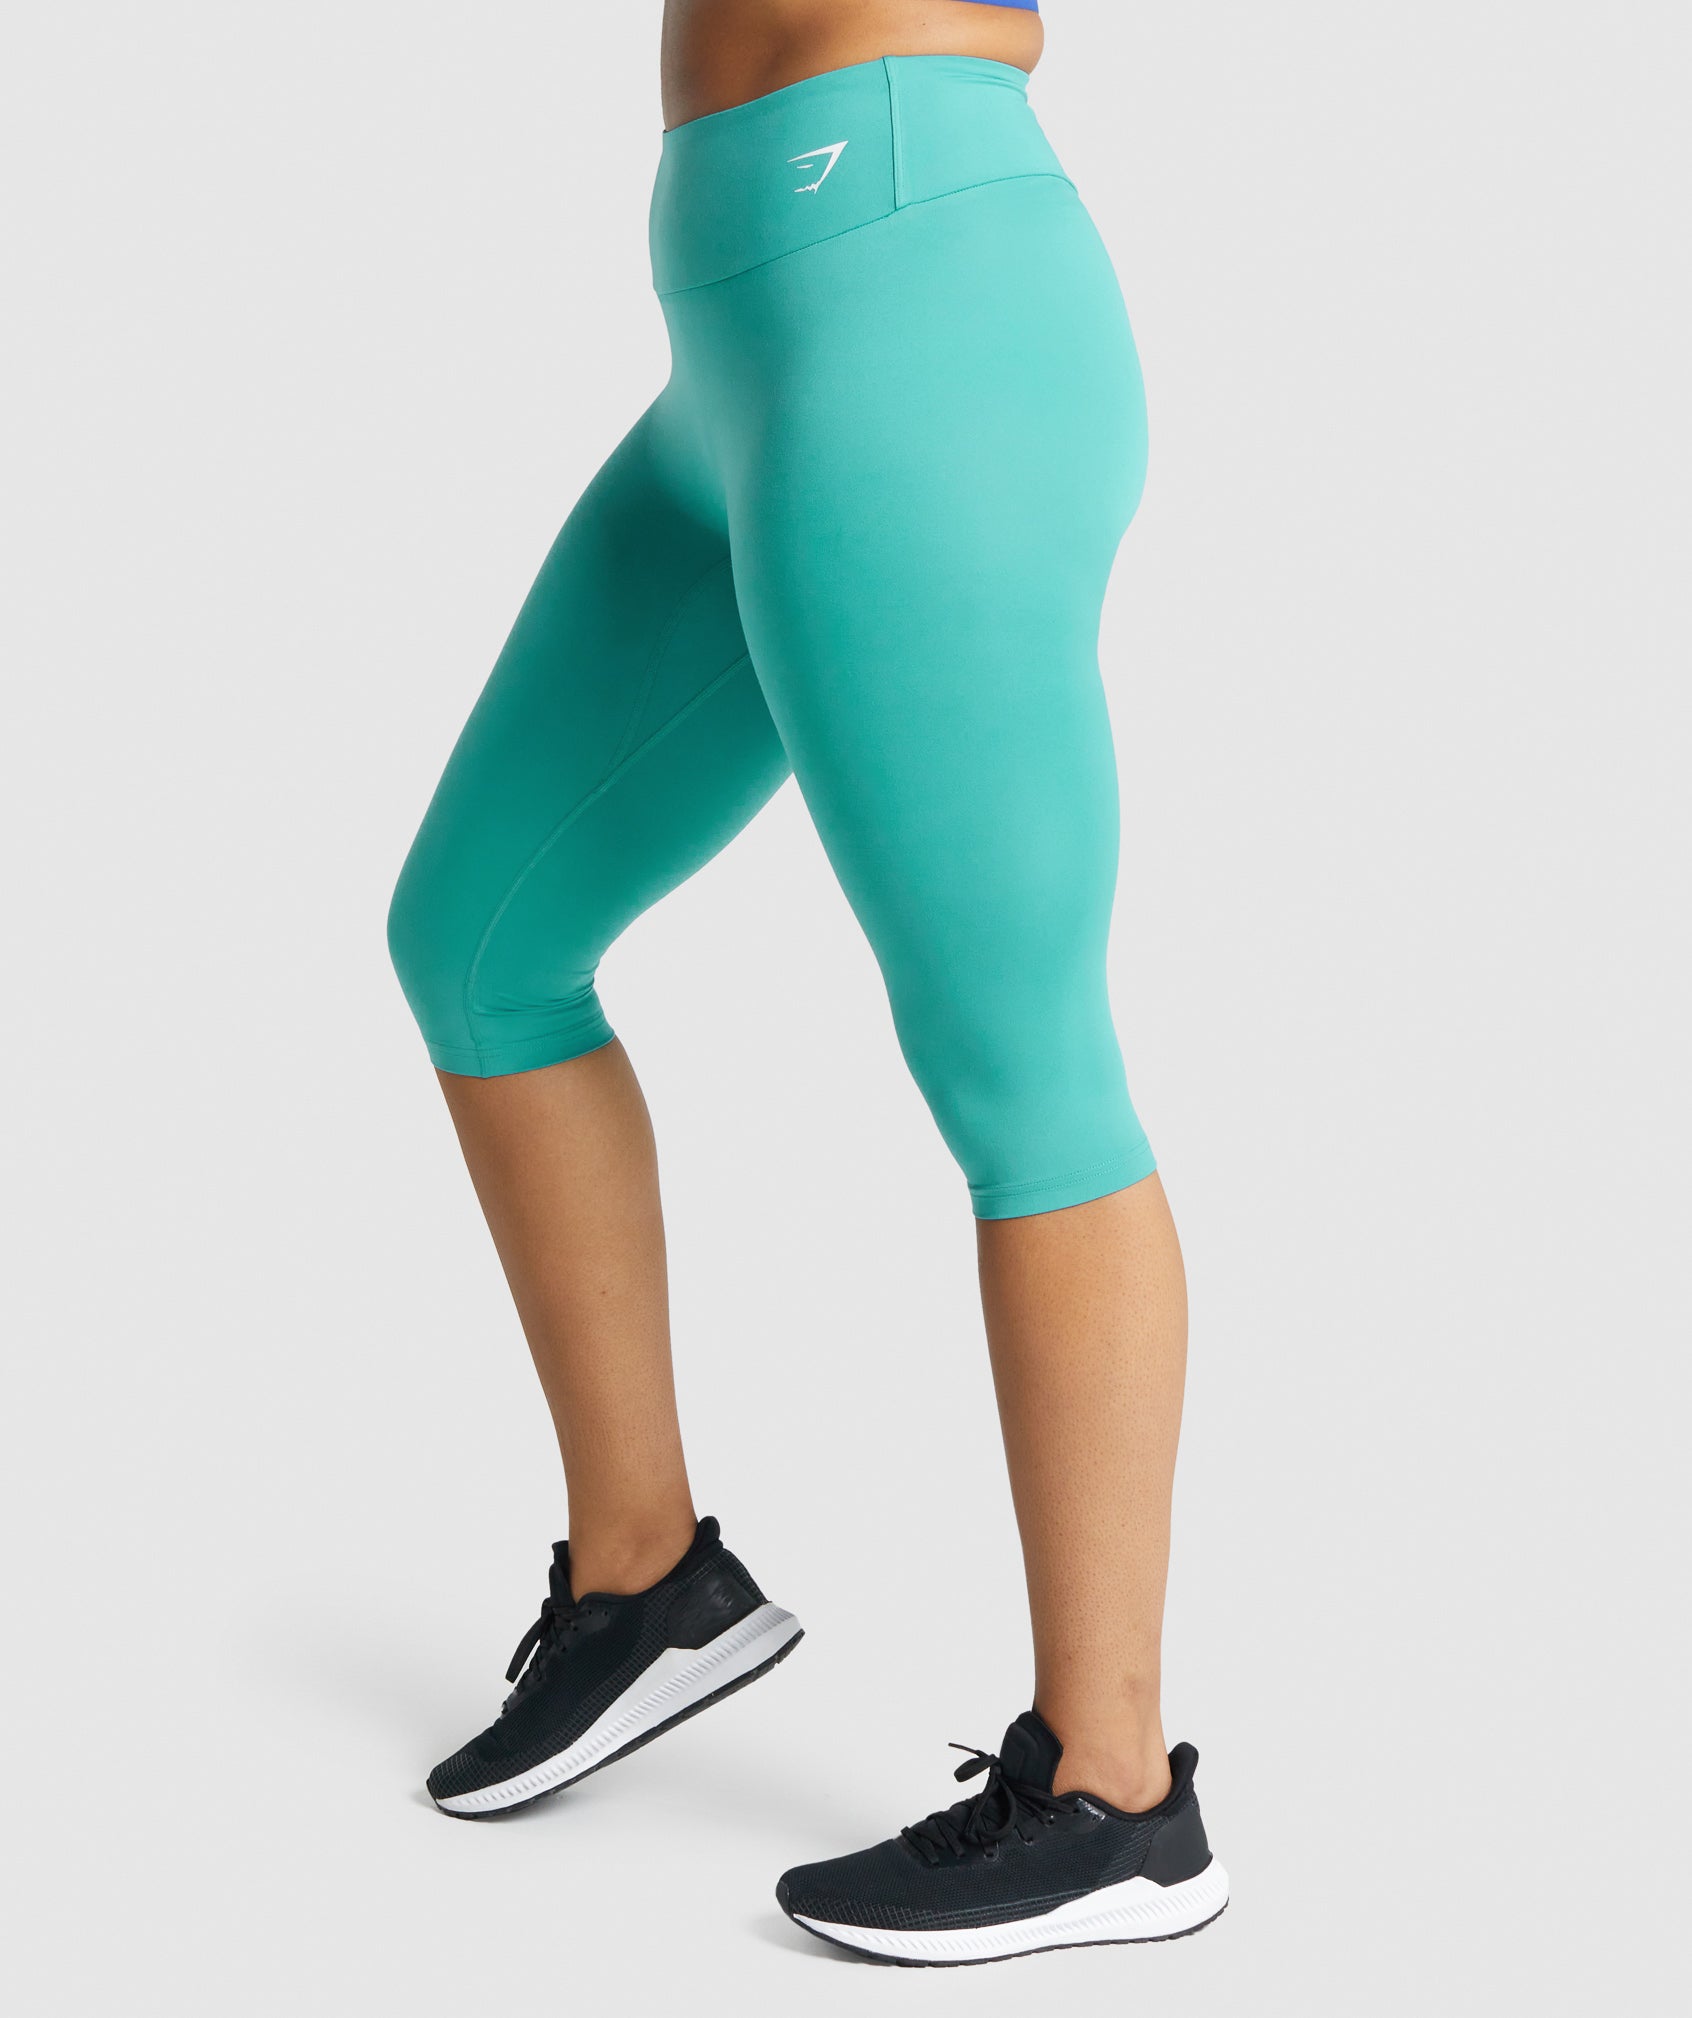 Gymshark Womens Leggings Seamless Gray Green Logo Cropped Capri Size S